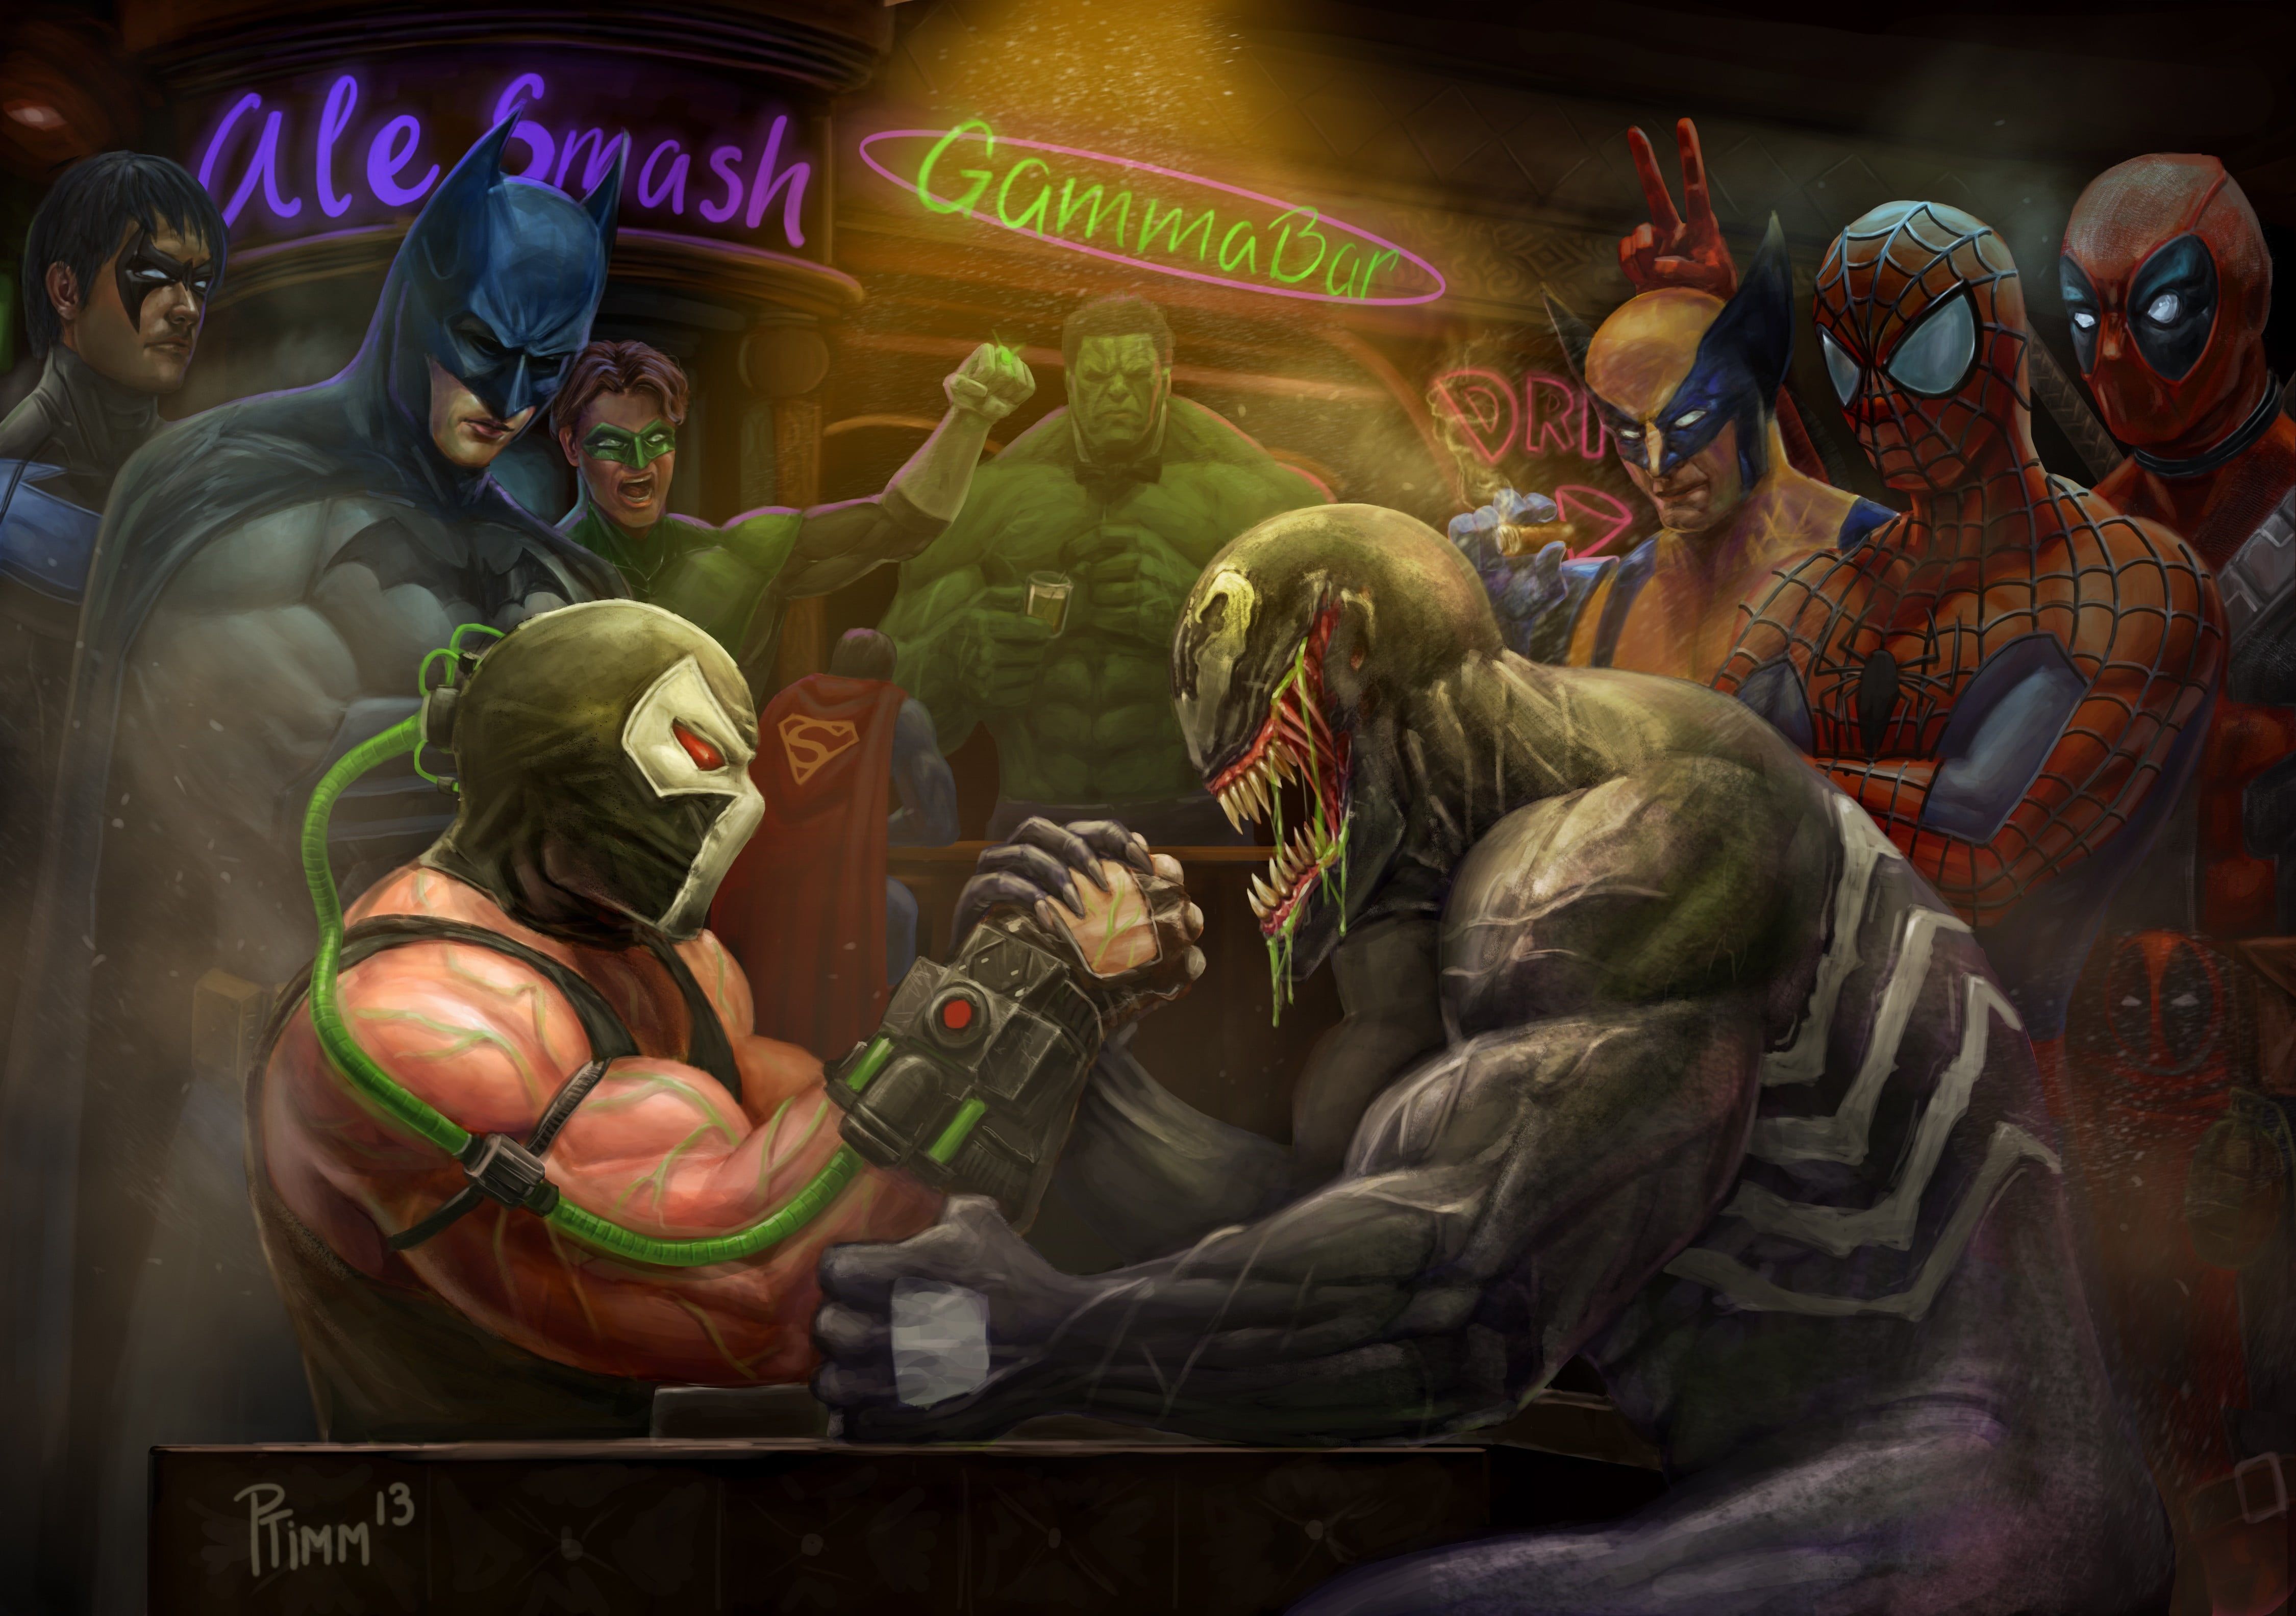 Venom and Bane arm wrestling digital wallpaper Marvel Comics DC Comics #Venom #Batman #Hulk Green Lantern #Sp. Marvel wallpaper, Marvel wallpaper hd, Comic poster